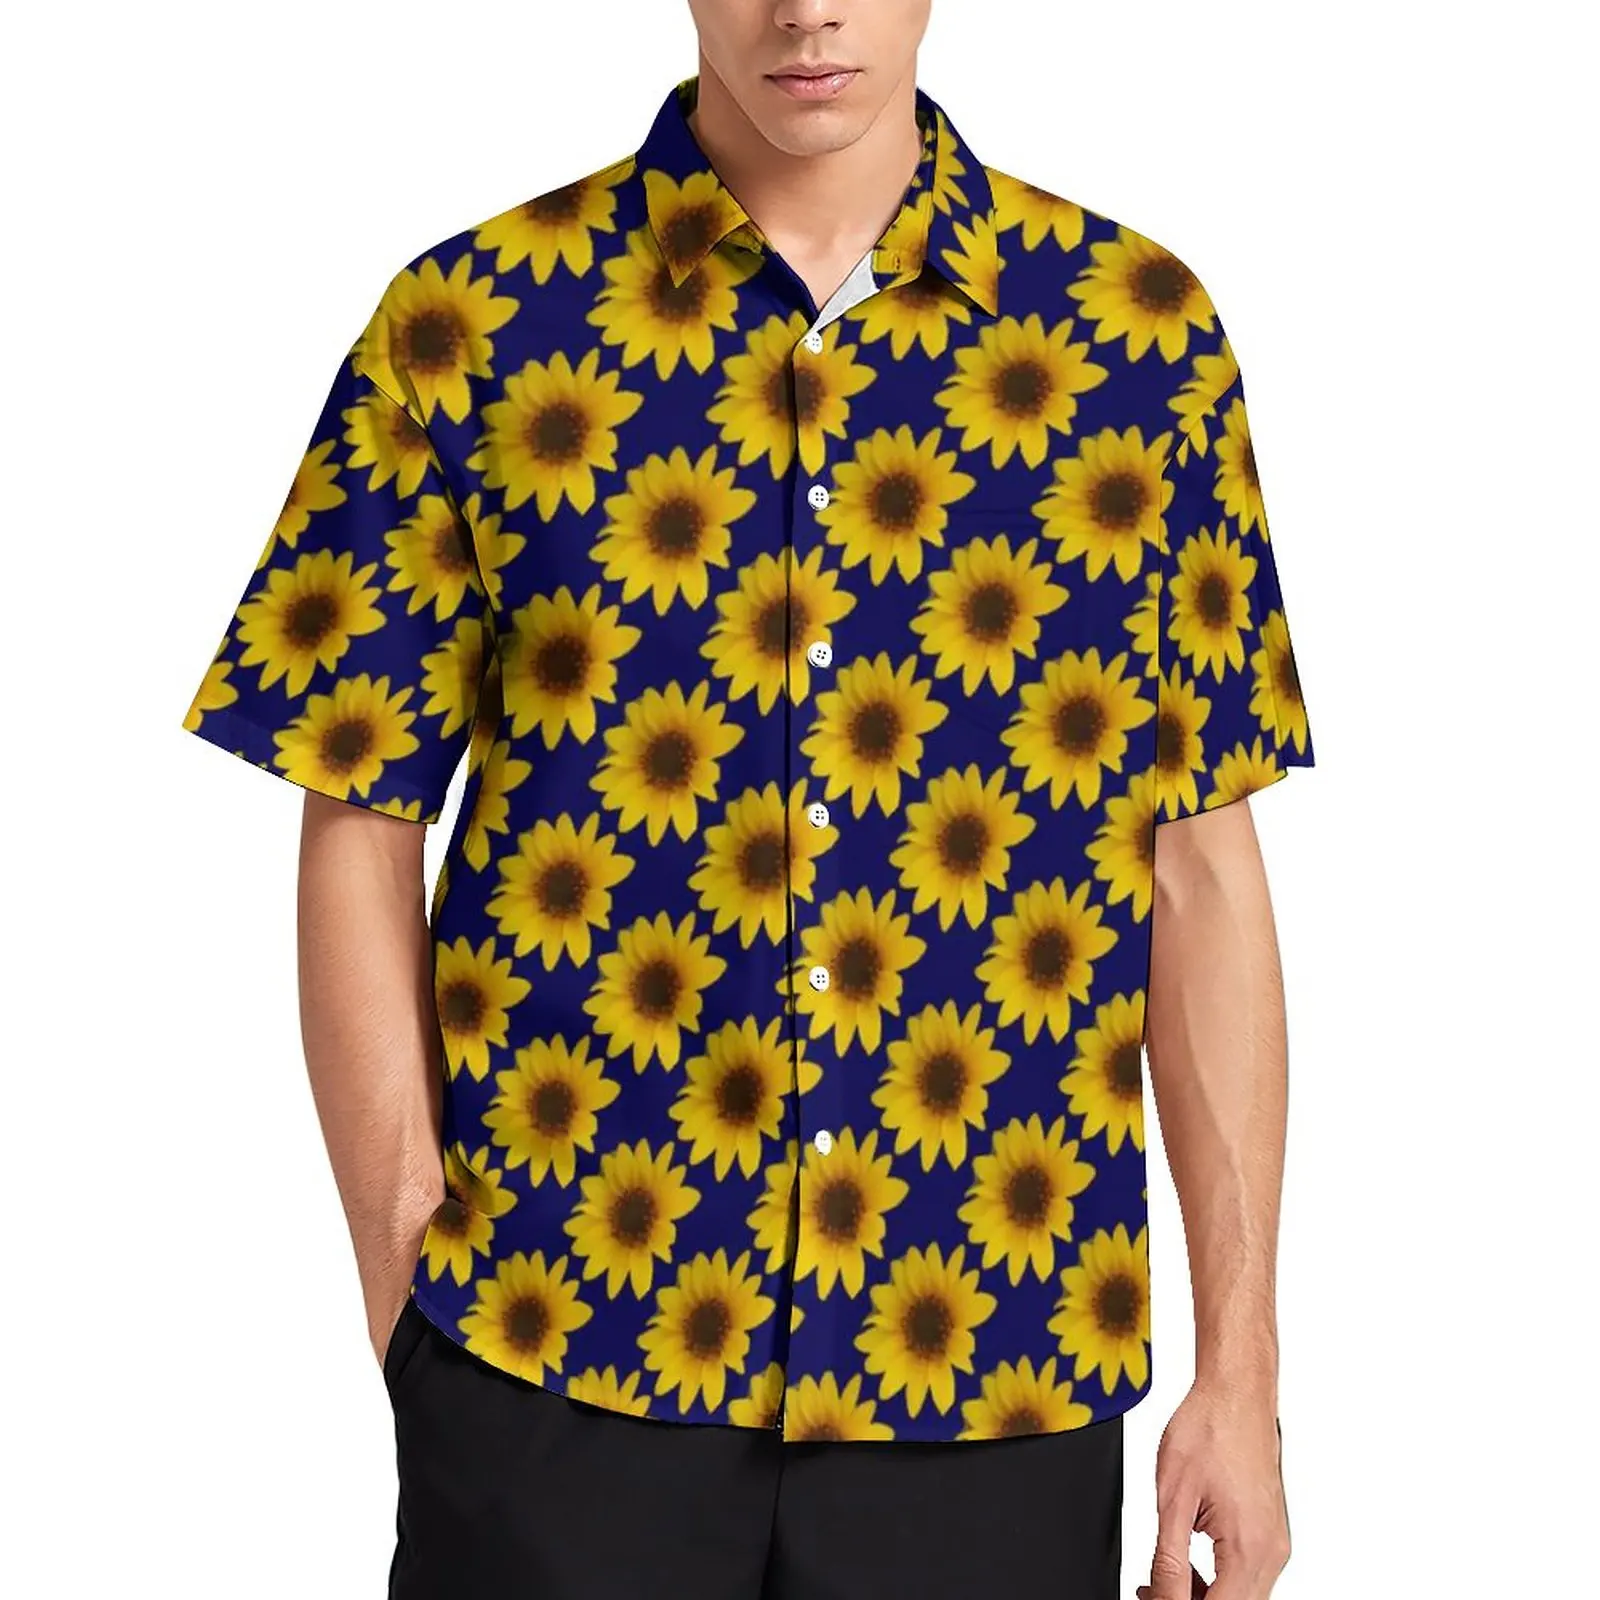 

Веселая Свободная рубашка с подсолнухом, мужские ярко-желтые повседневные рубашки для отпуска, Гавайские винтажные блузки большого размер...